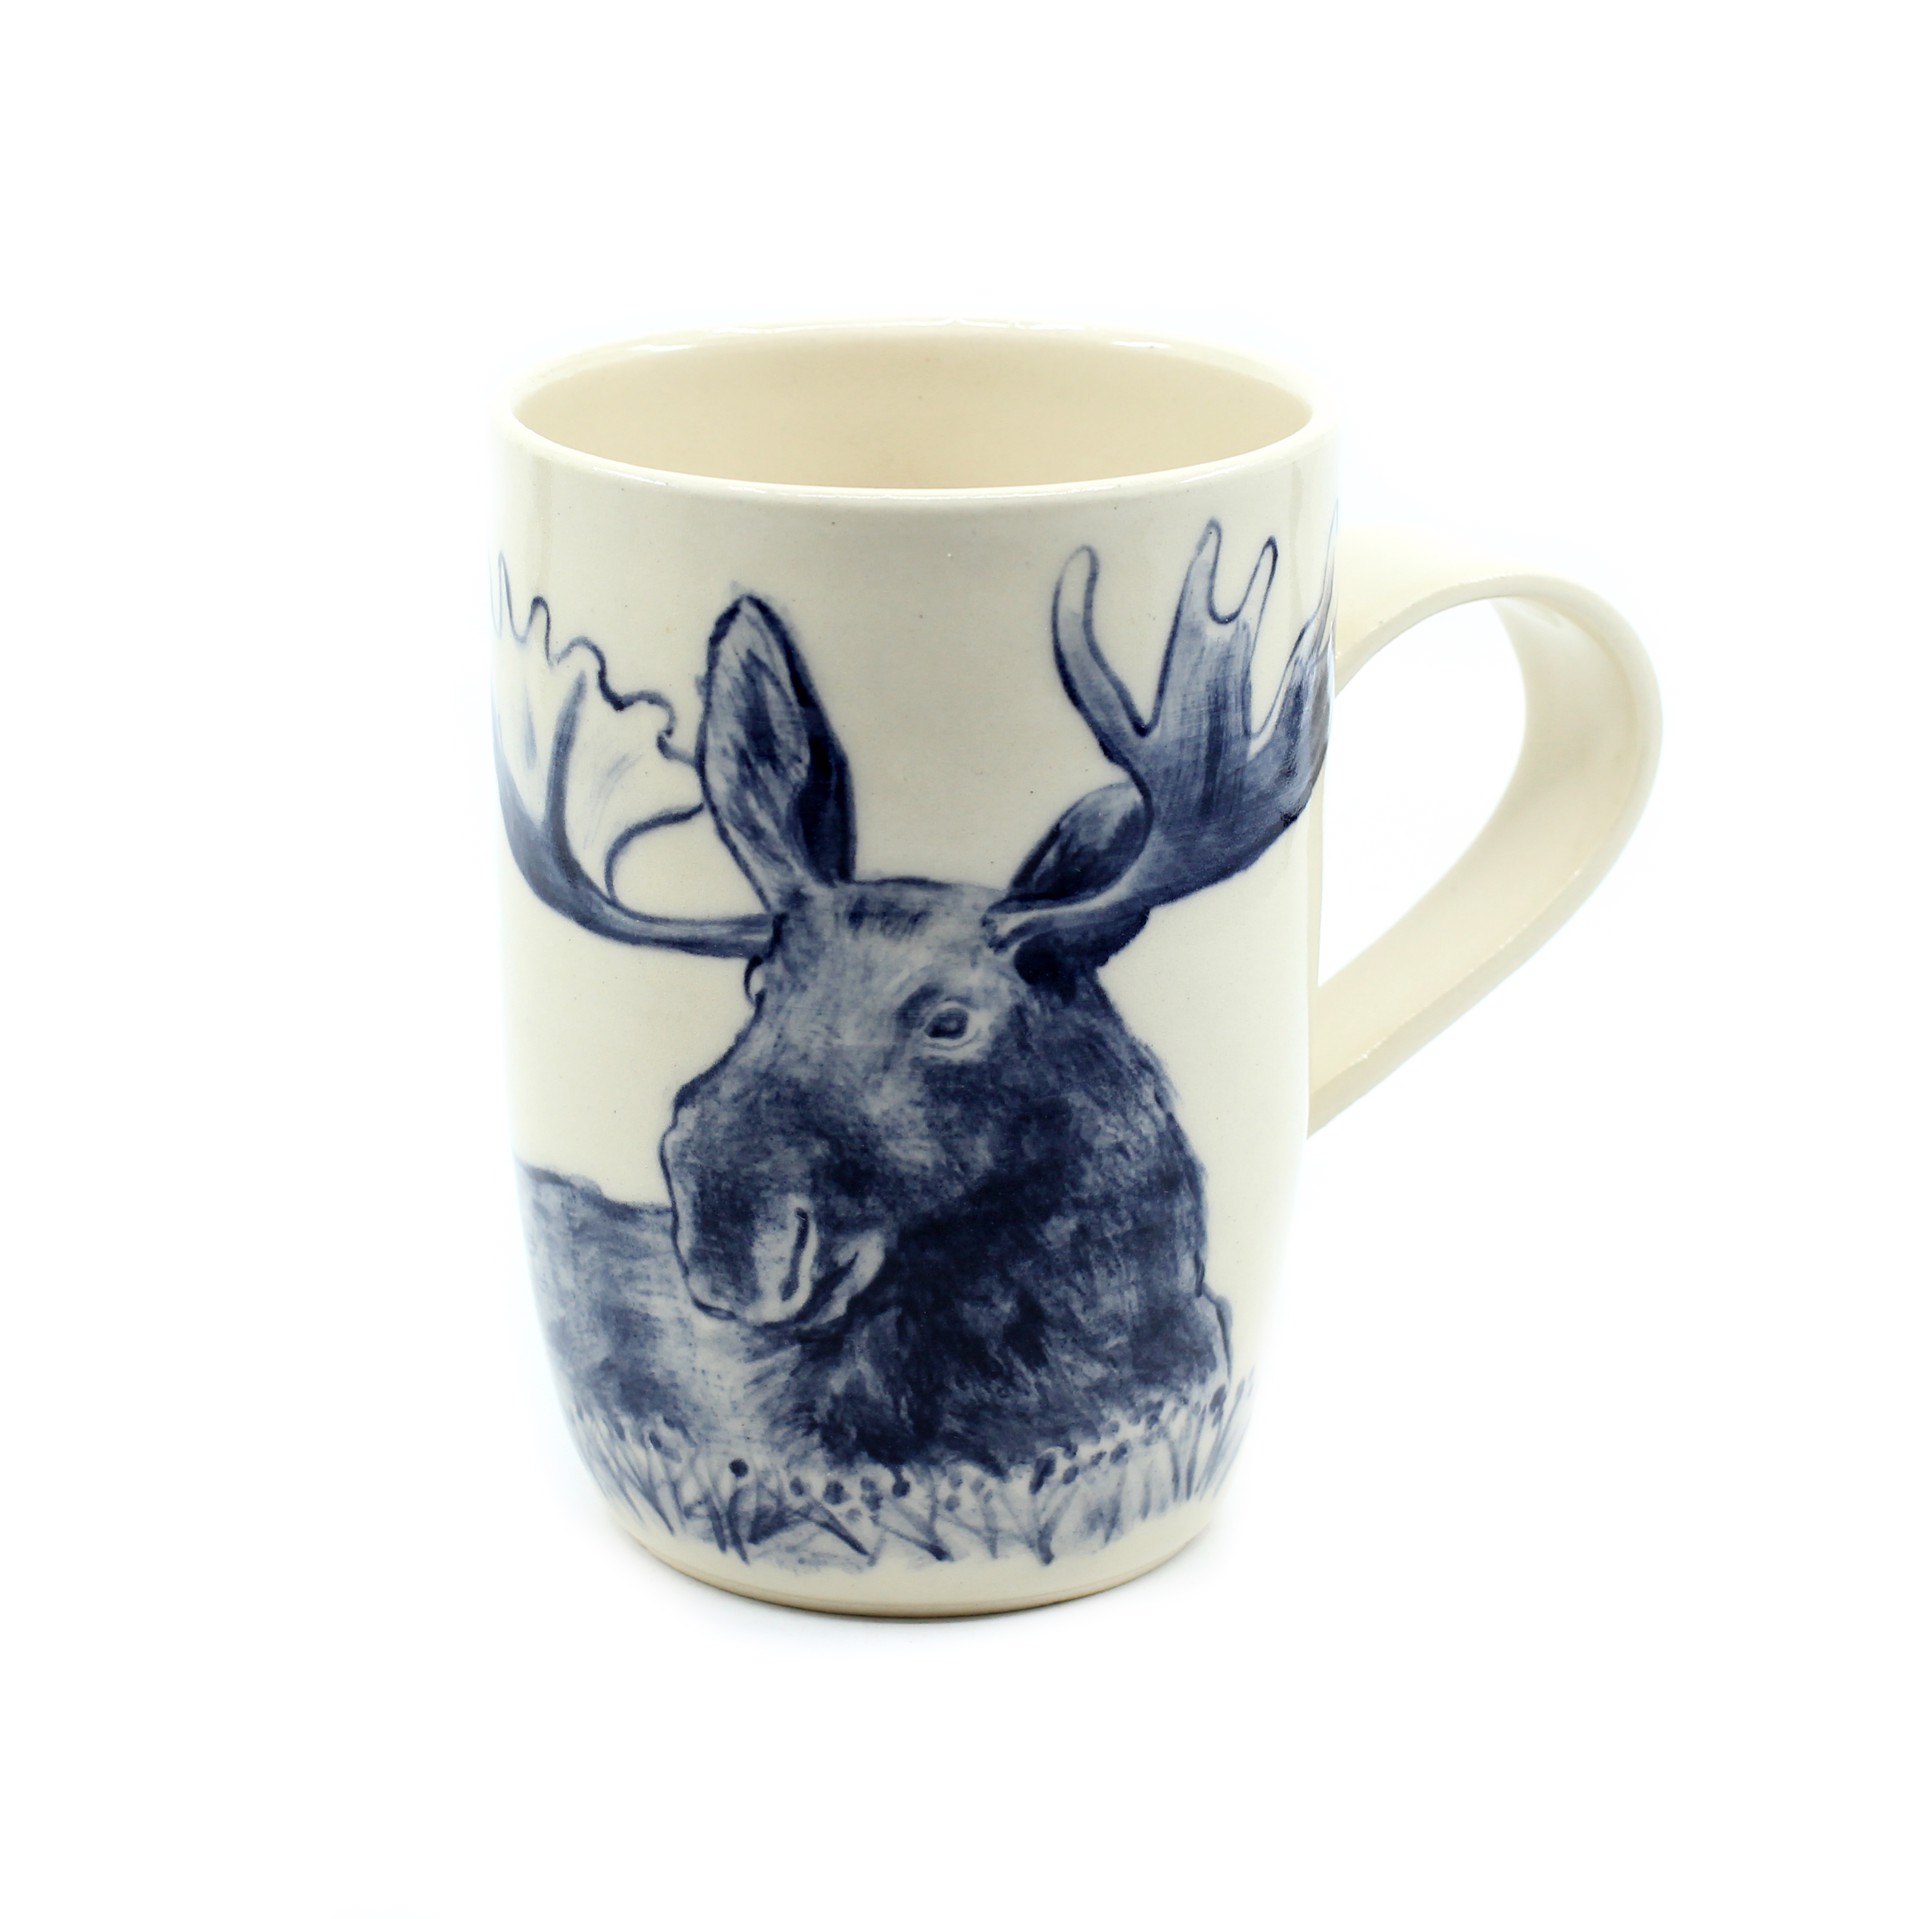 Moose Mug by Kat Kinnick